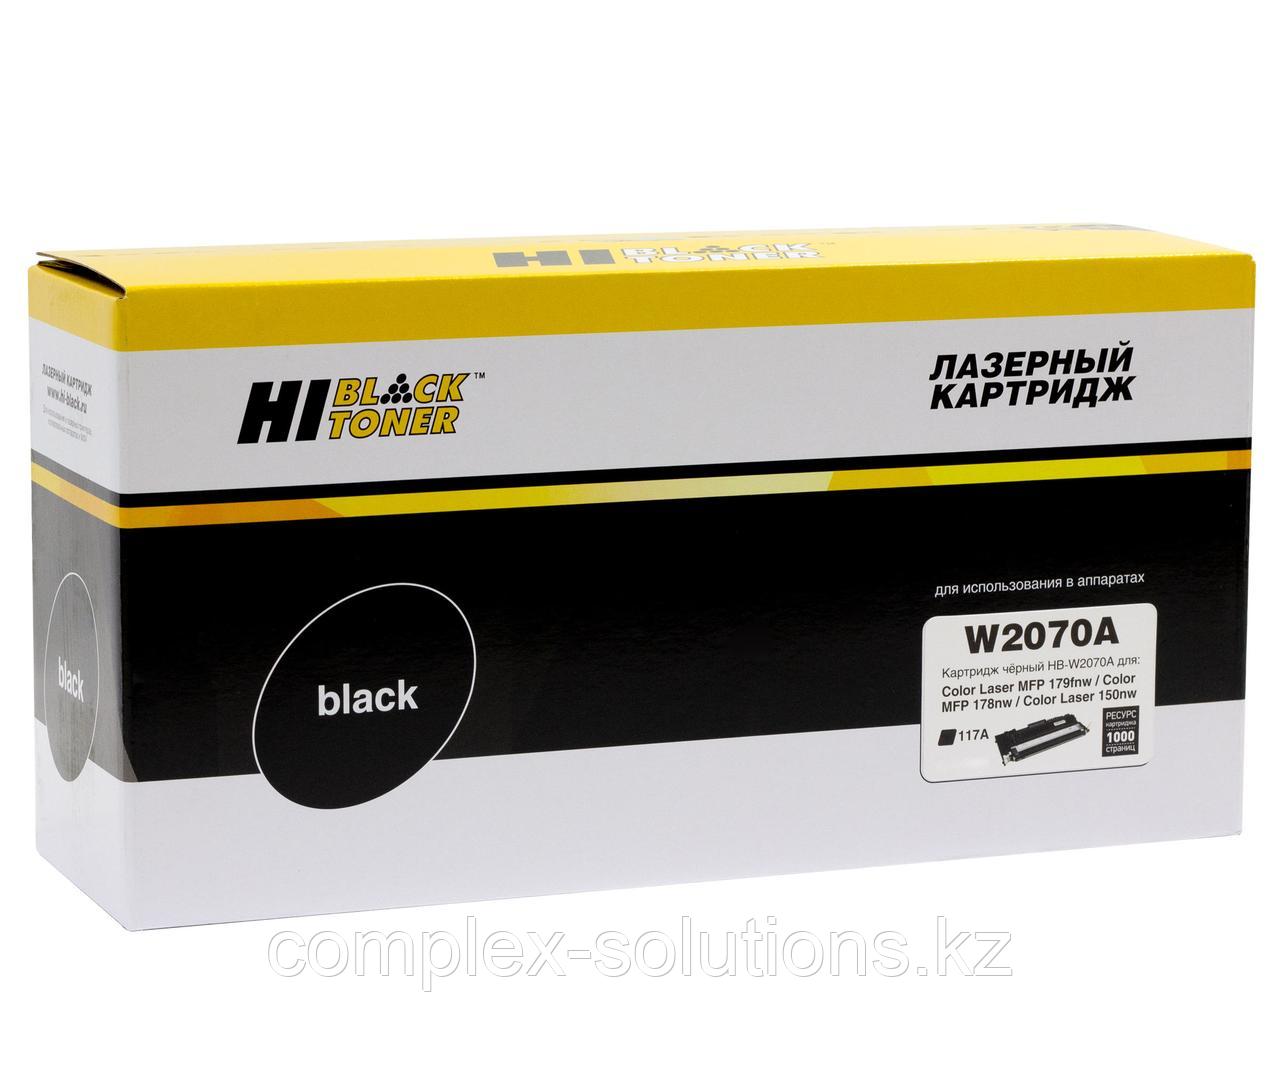 Тонер картридж Hi-Black [W2070A] для H-P CL 150a | 150nw | MFP178nw | 179fnw, 117A, Bk, 1K | [качественный